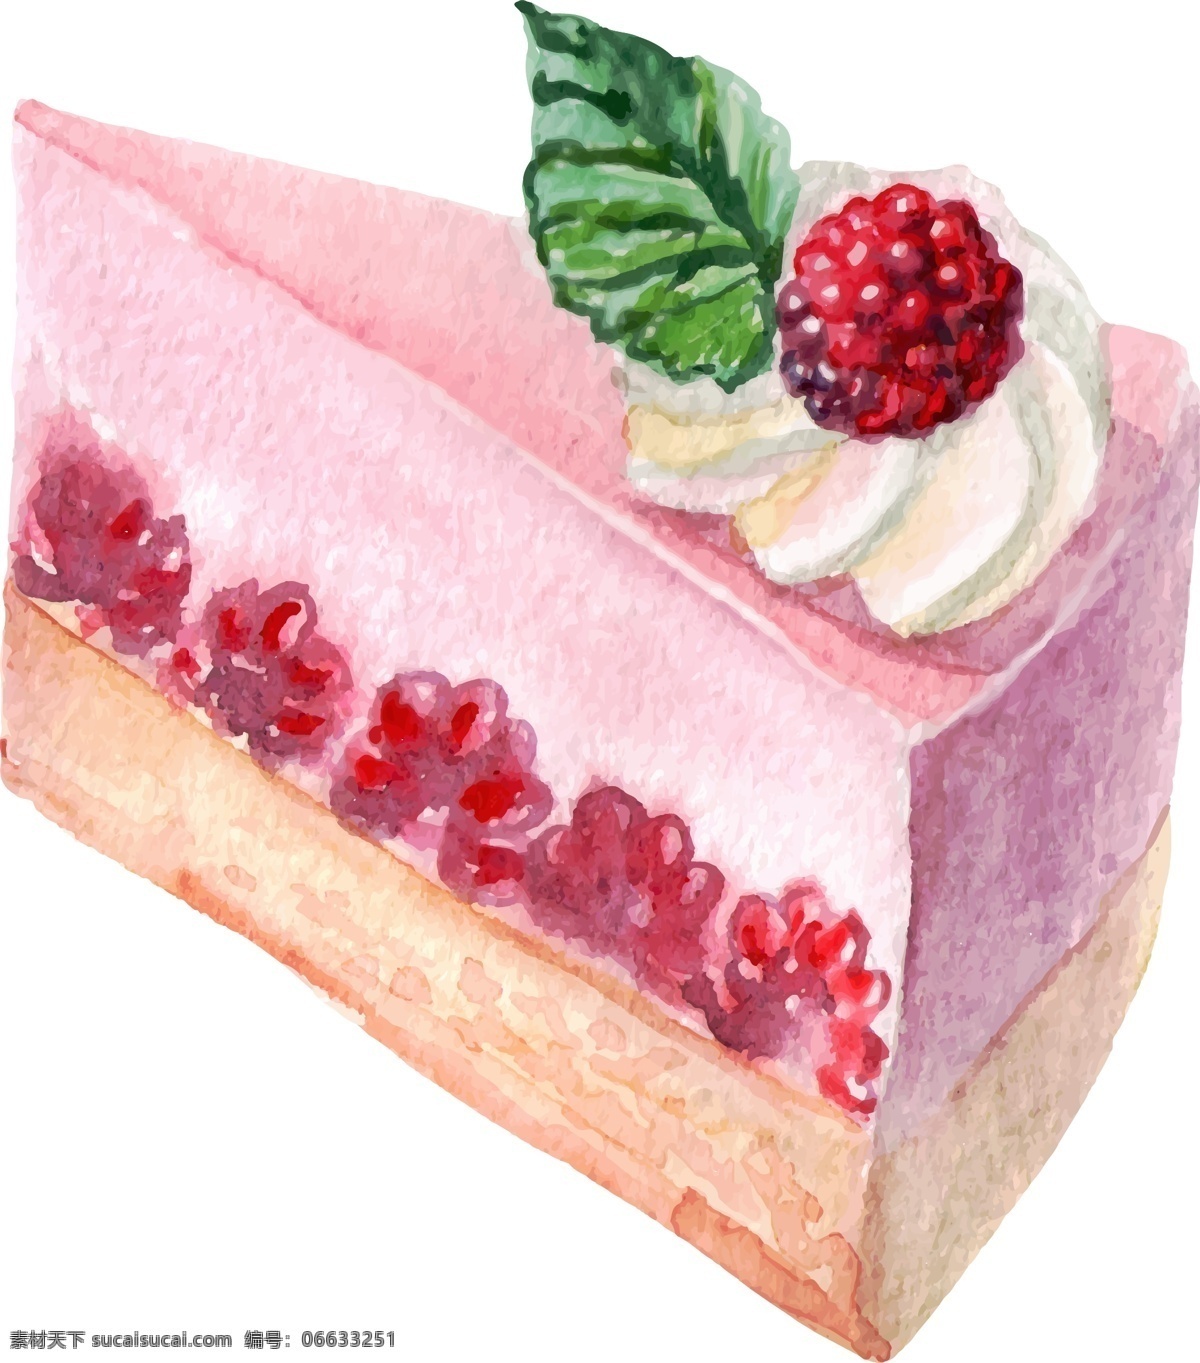 水彩 绘 美味 蛋糕 插画 奶油 手绘 水彩绘 水果 甜品